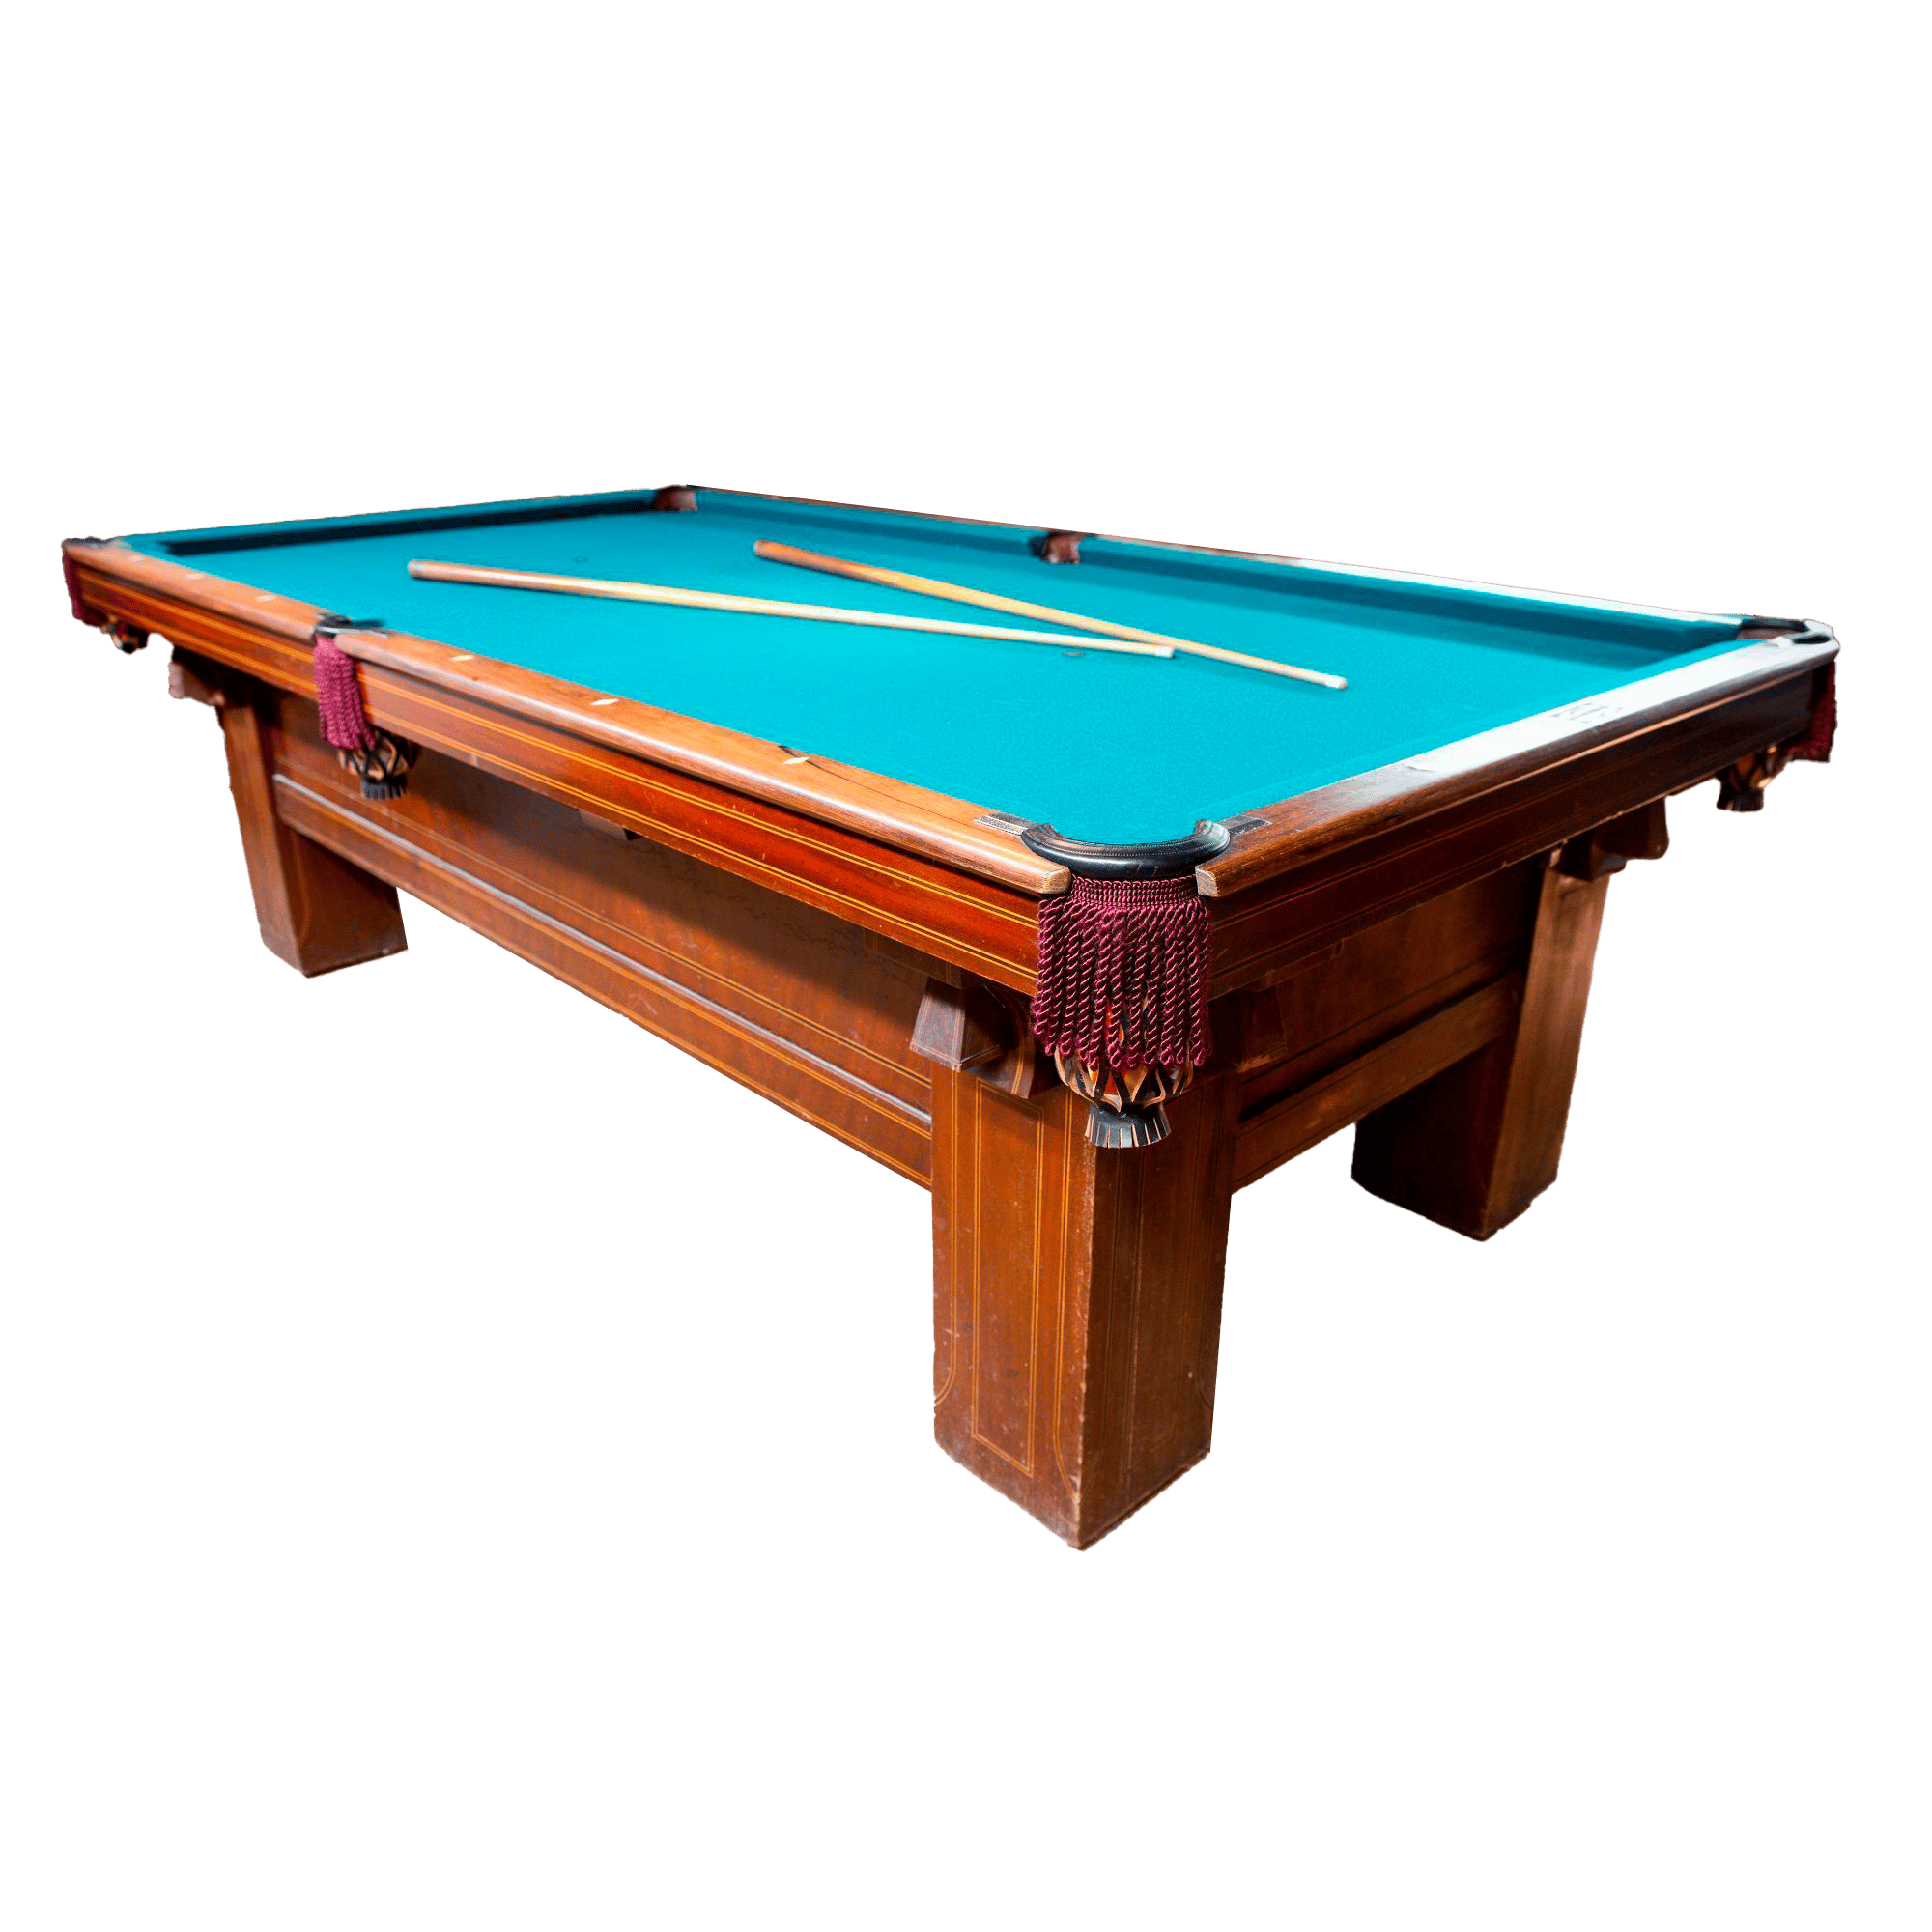 Janis Joplin's pool table